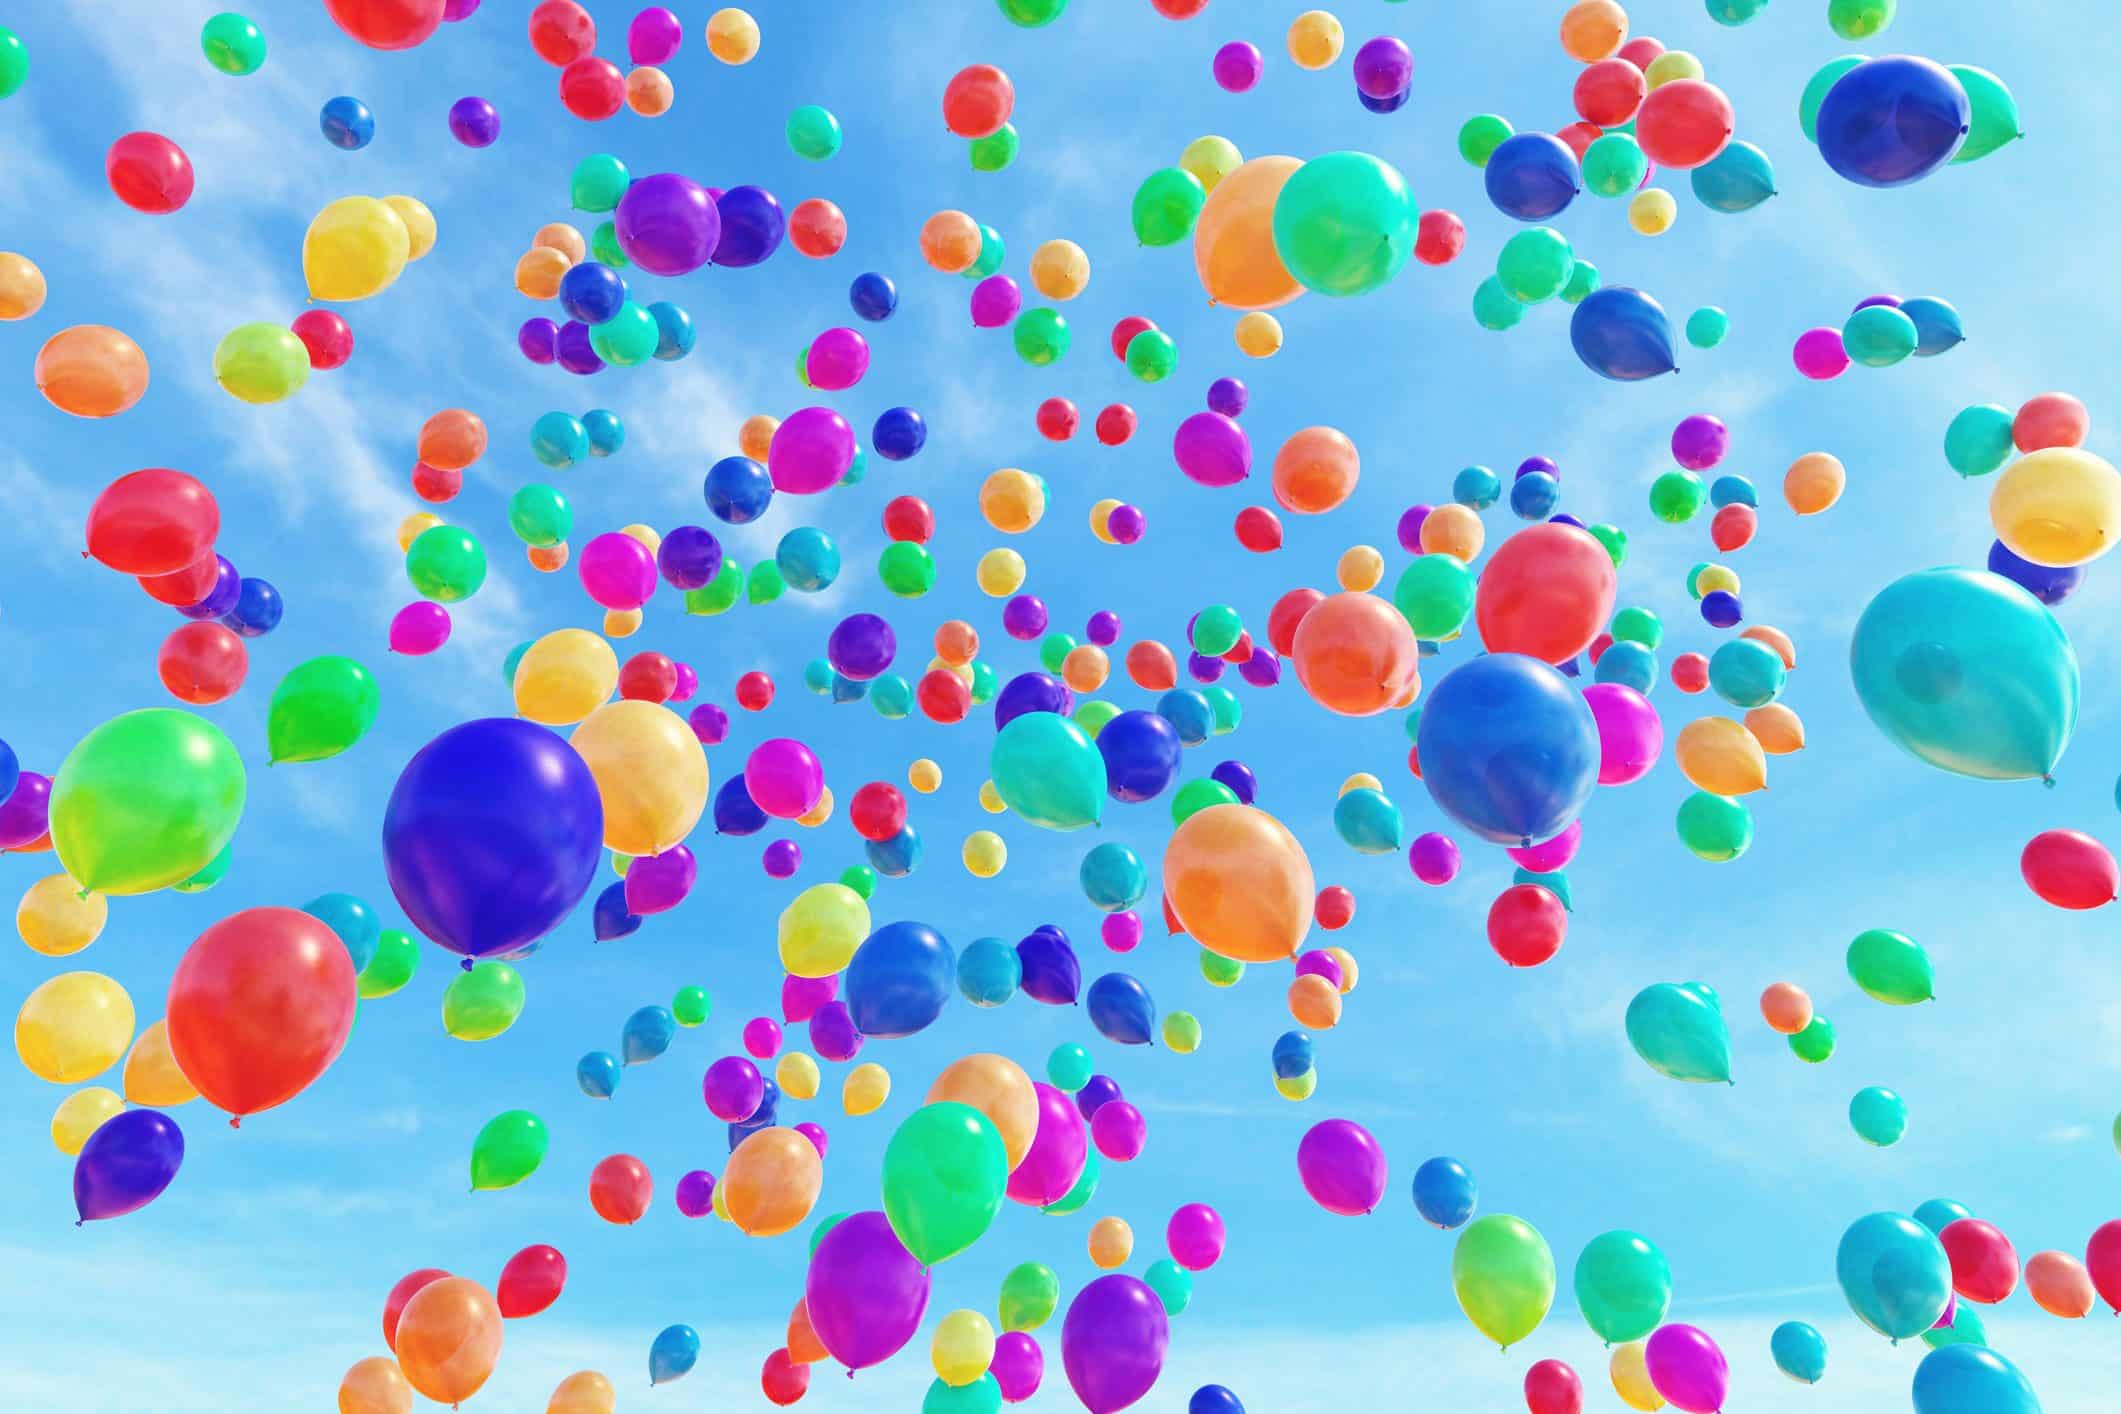 I palloncini colorati rappresentano una fonte non indifferente di inquinamento